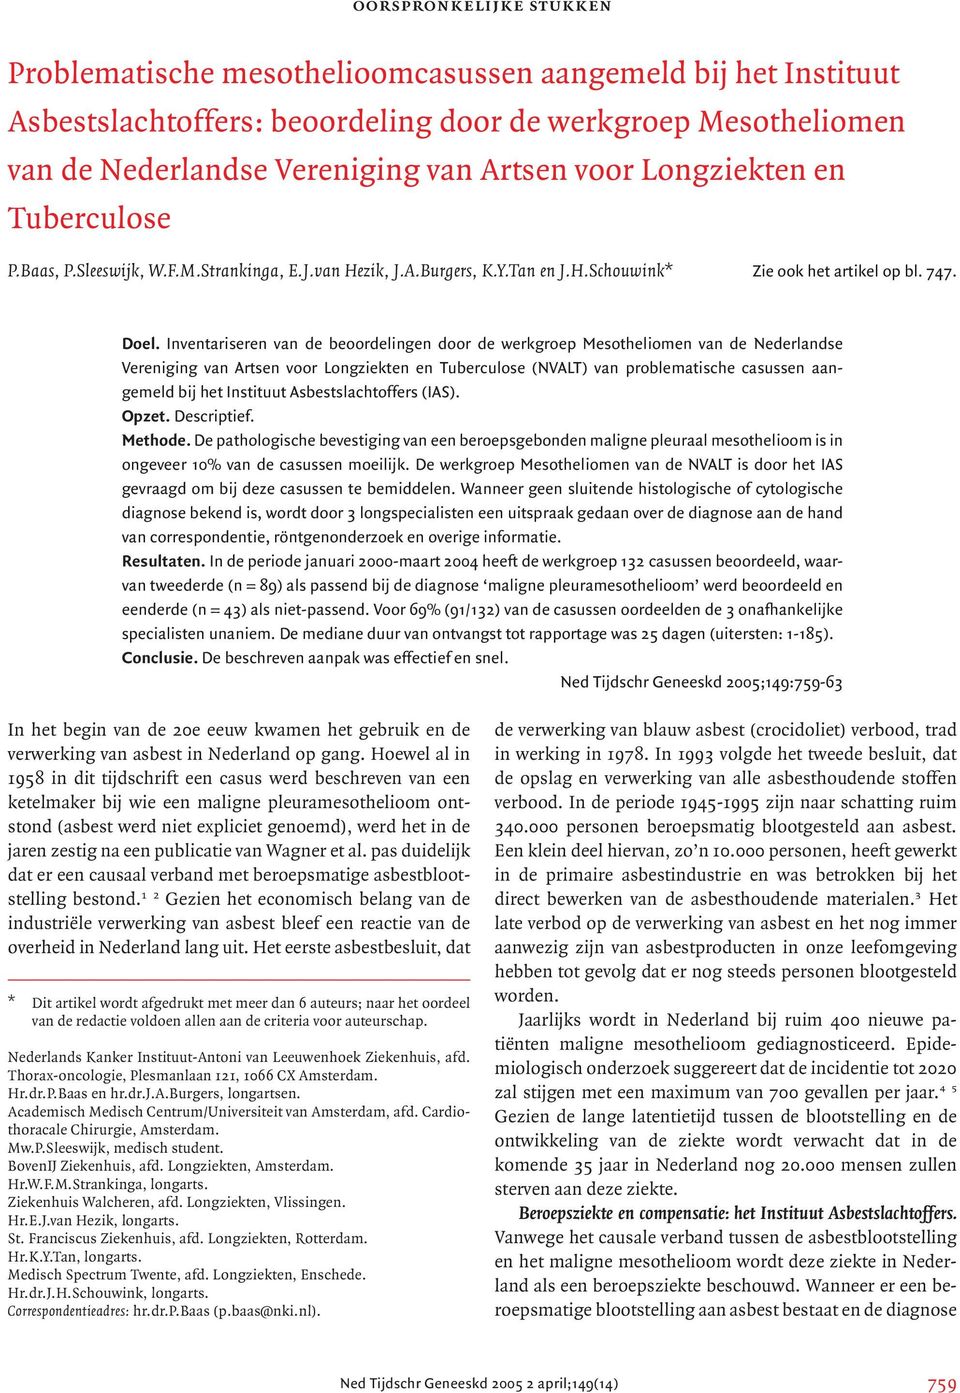 Inventariseren van de beoordelingen door de werkgroep Mesotheliomen van de Nederlandse Vereniging van Artsen voor Longziekten en Tuberculose (NVALT) van problematische casussen aangemeld bij het